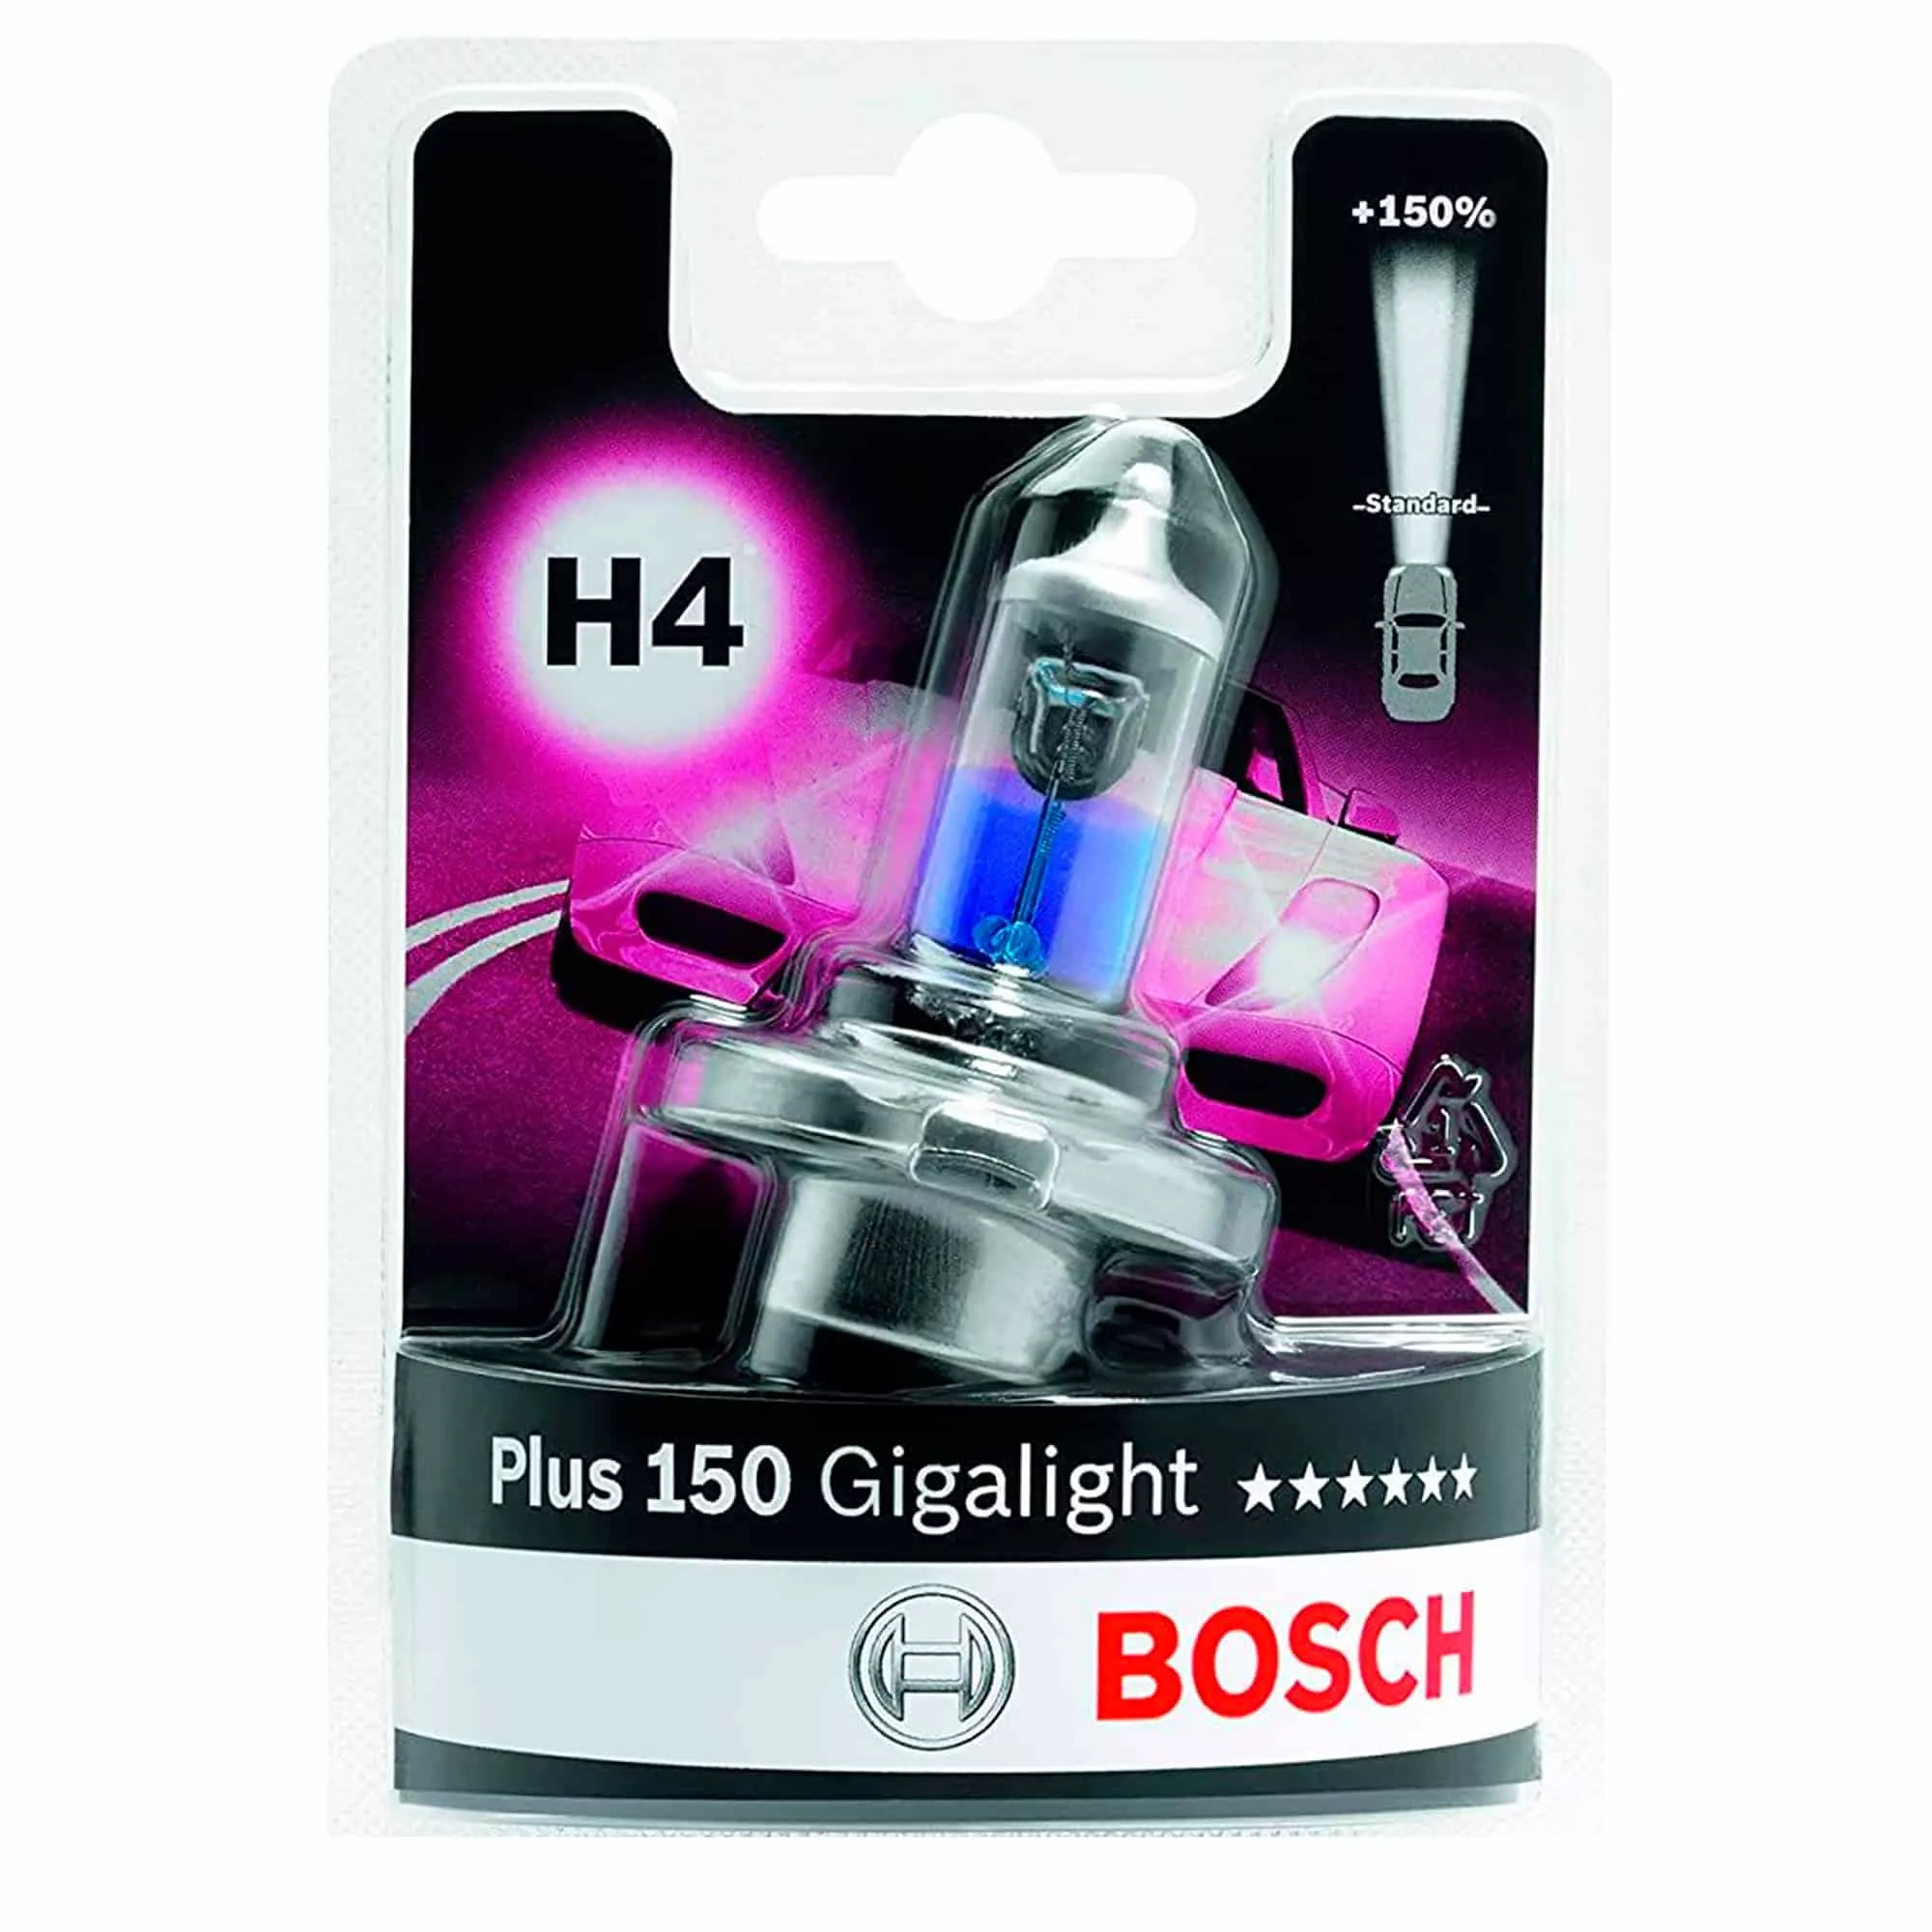 Лампа Bosch Gigalight Plus 150 H4 12V 55/60W 1987301136